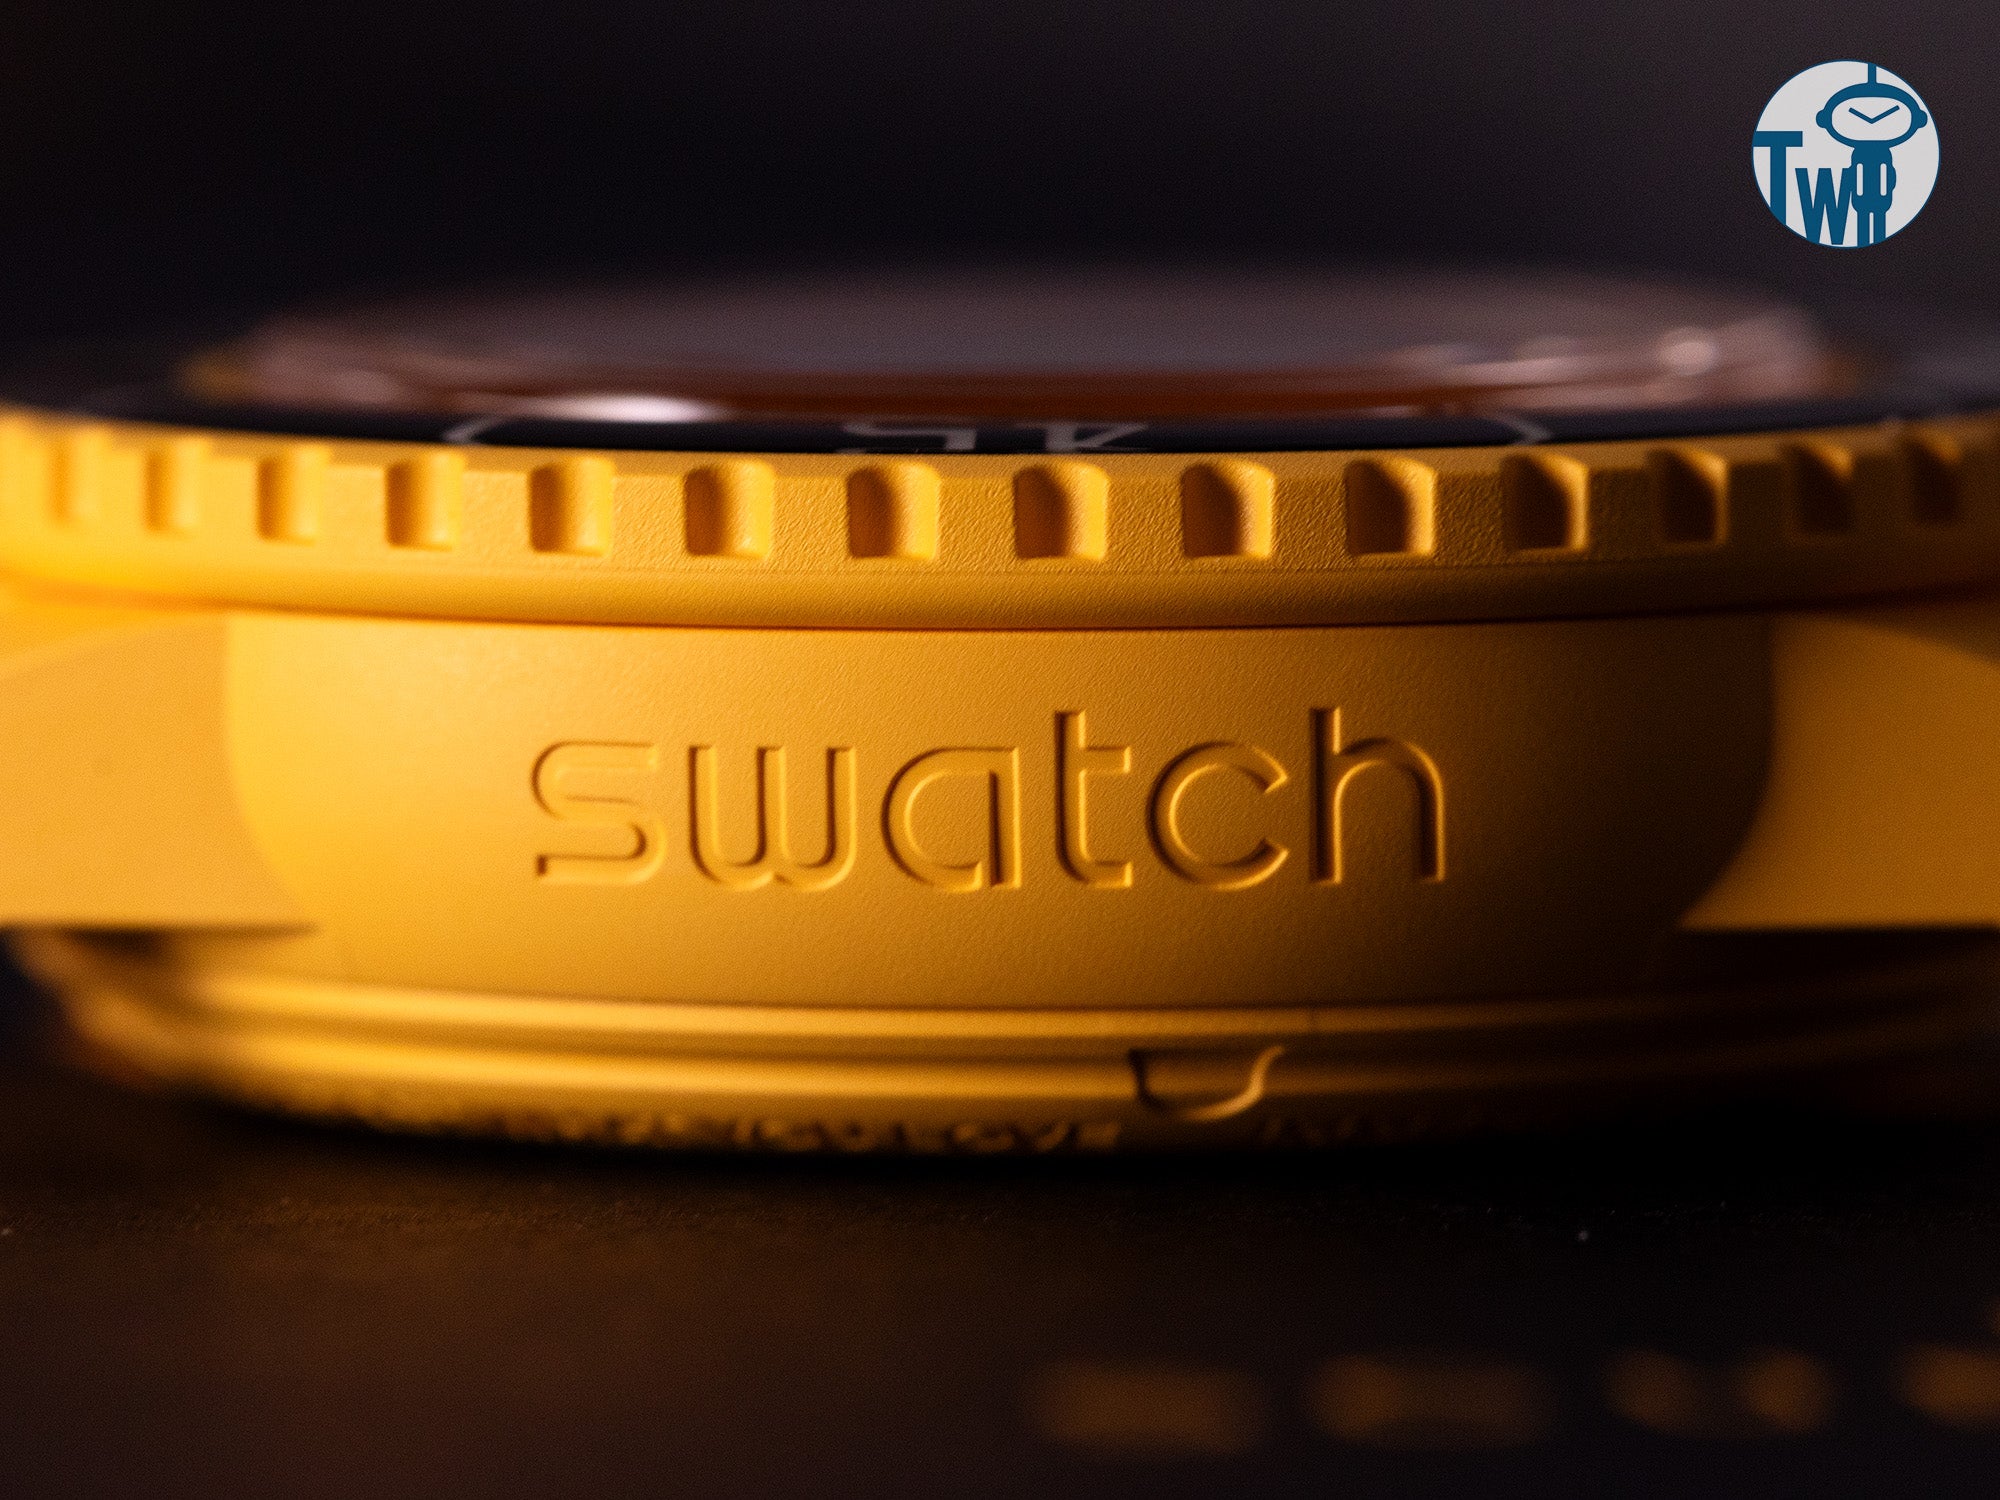 「Pacific Ocean 太平洋」黃色生物陶瓷錶殼上刻有Swatch商標，位於左側錶殼位置。